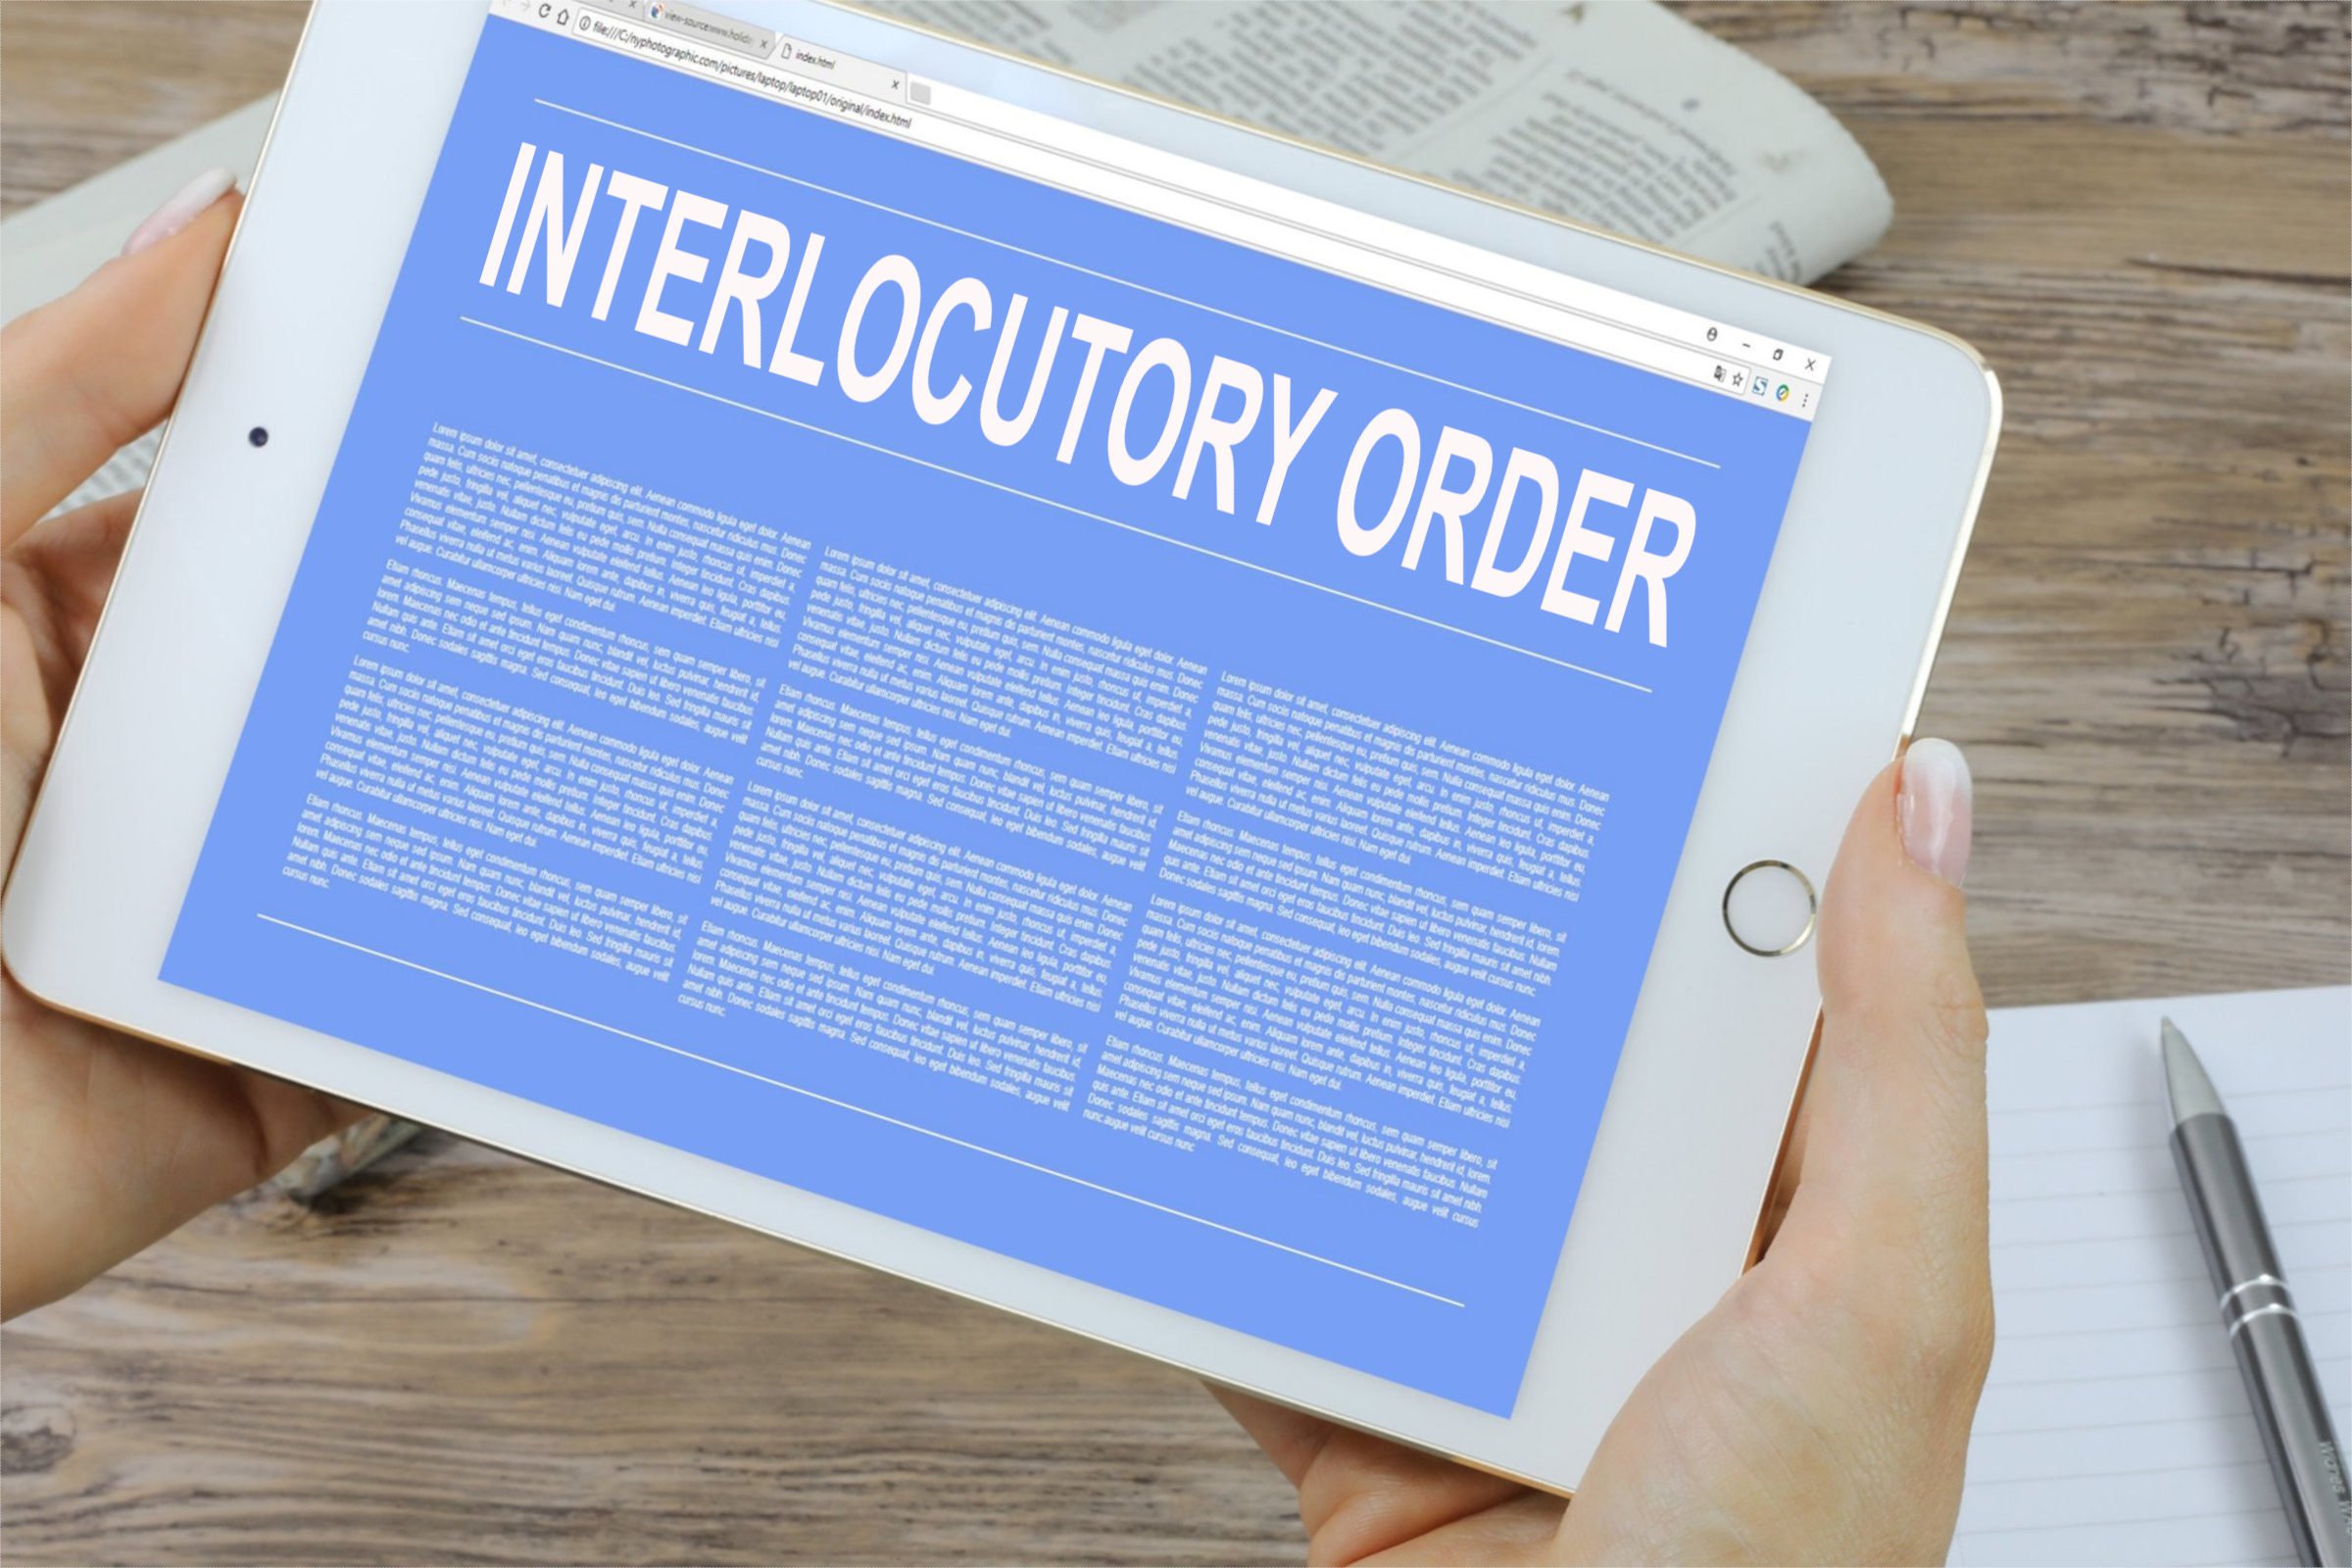 interlocutory order